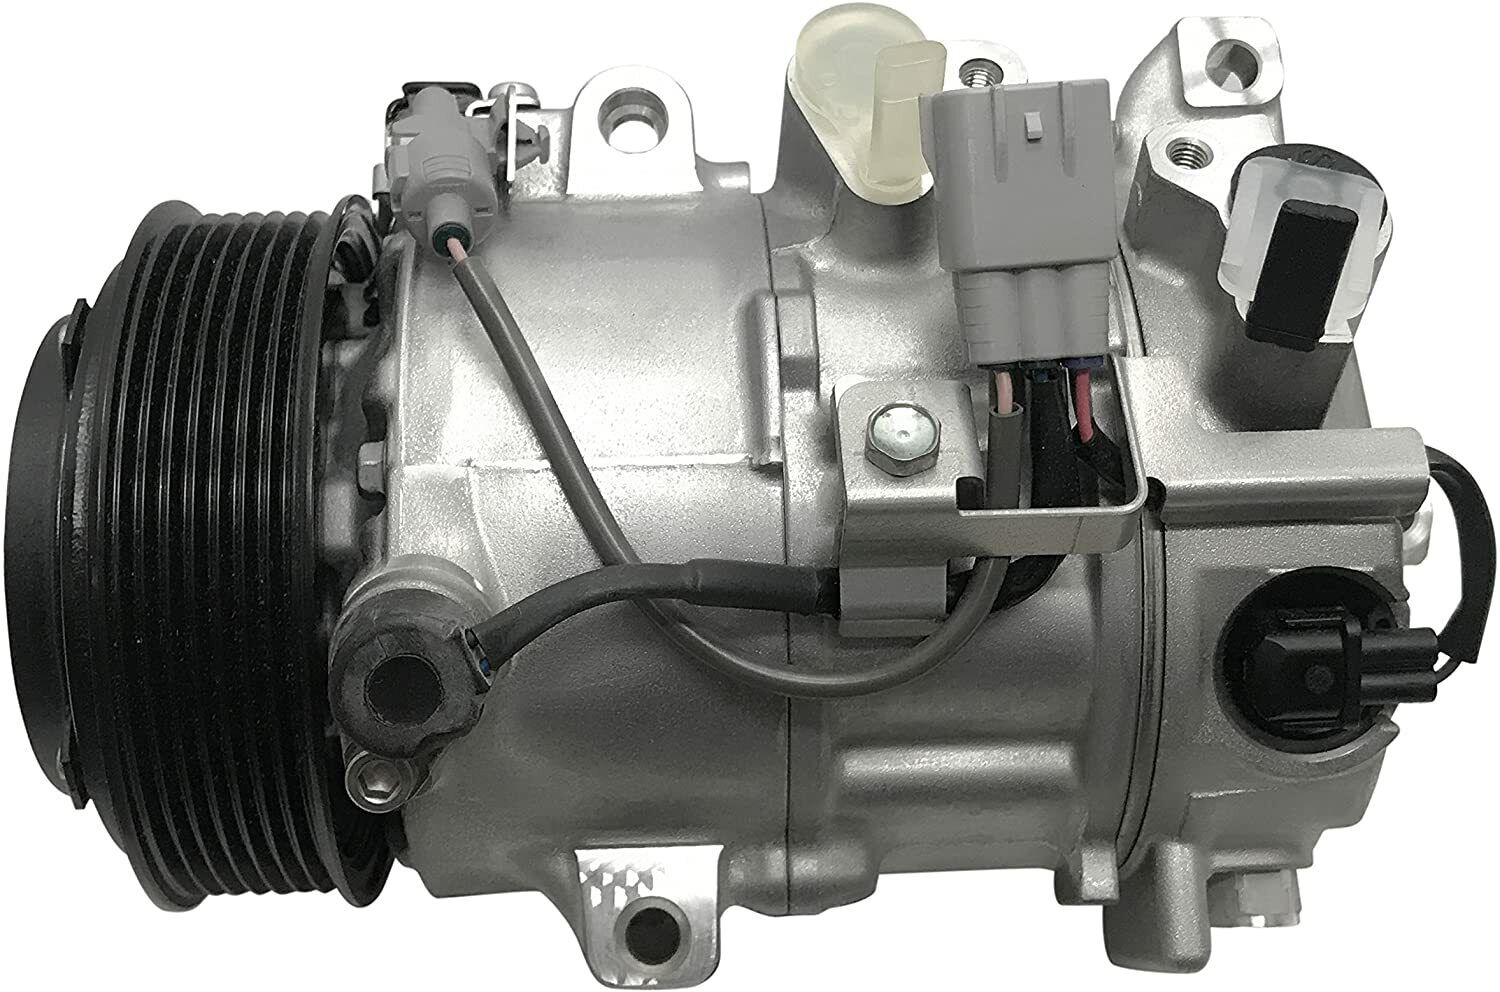 RYC Reman AC Compressor AEG347 Fits Lexus IS250 2.5L 2006 2007 2008 2009 2010